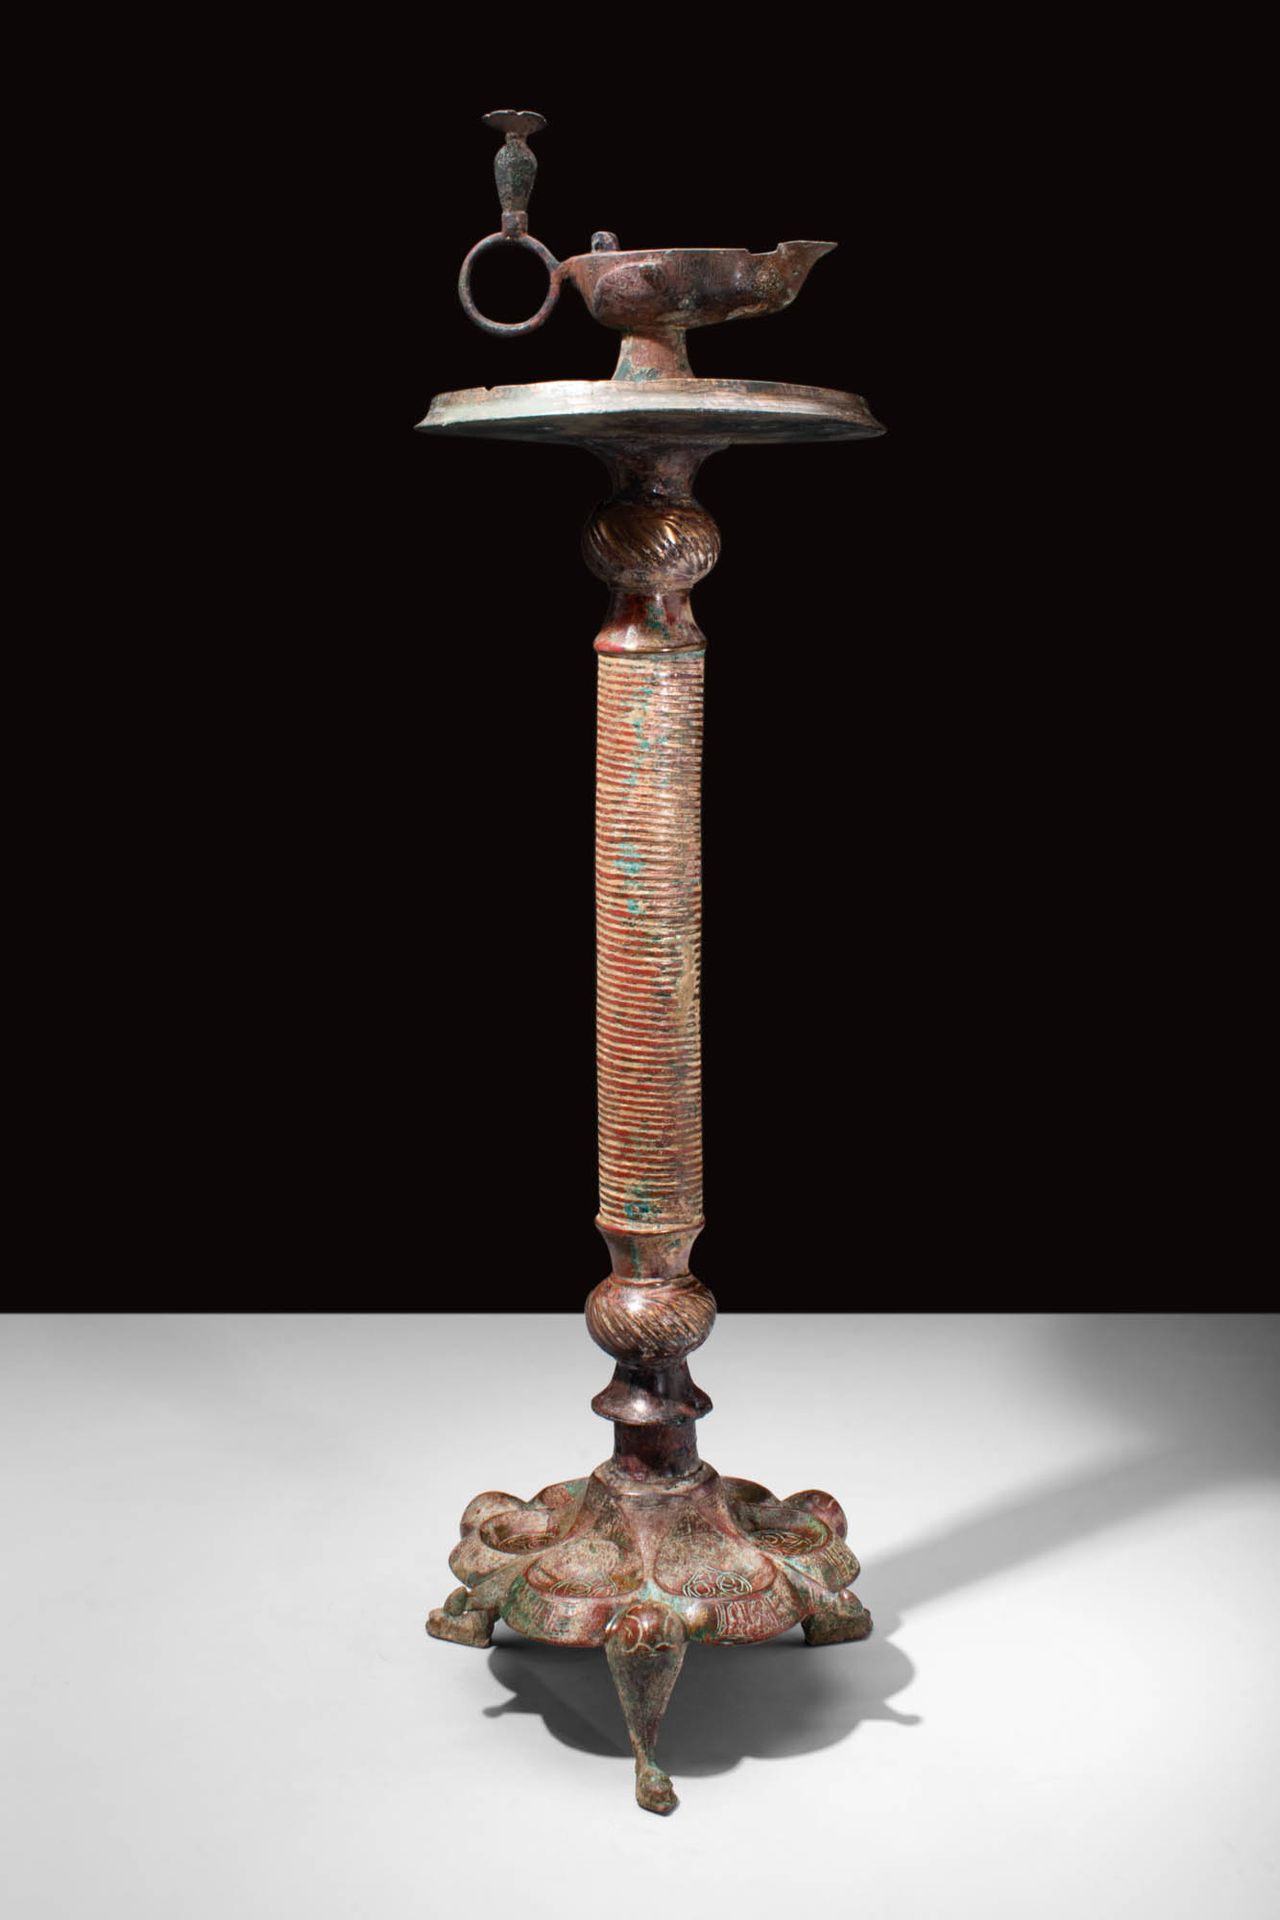 RARE SELJUK BRONZE LAMPSTAND Ca. AD 900 - 1200.
Ein islamischer seldschukischer &hellip;